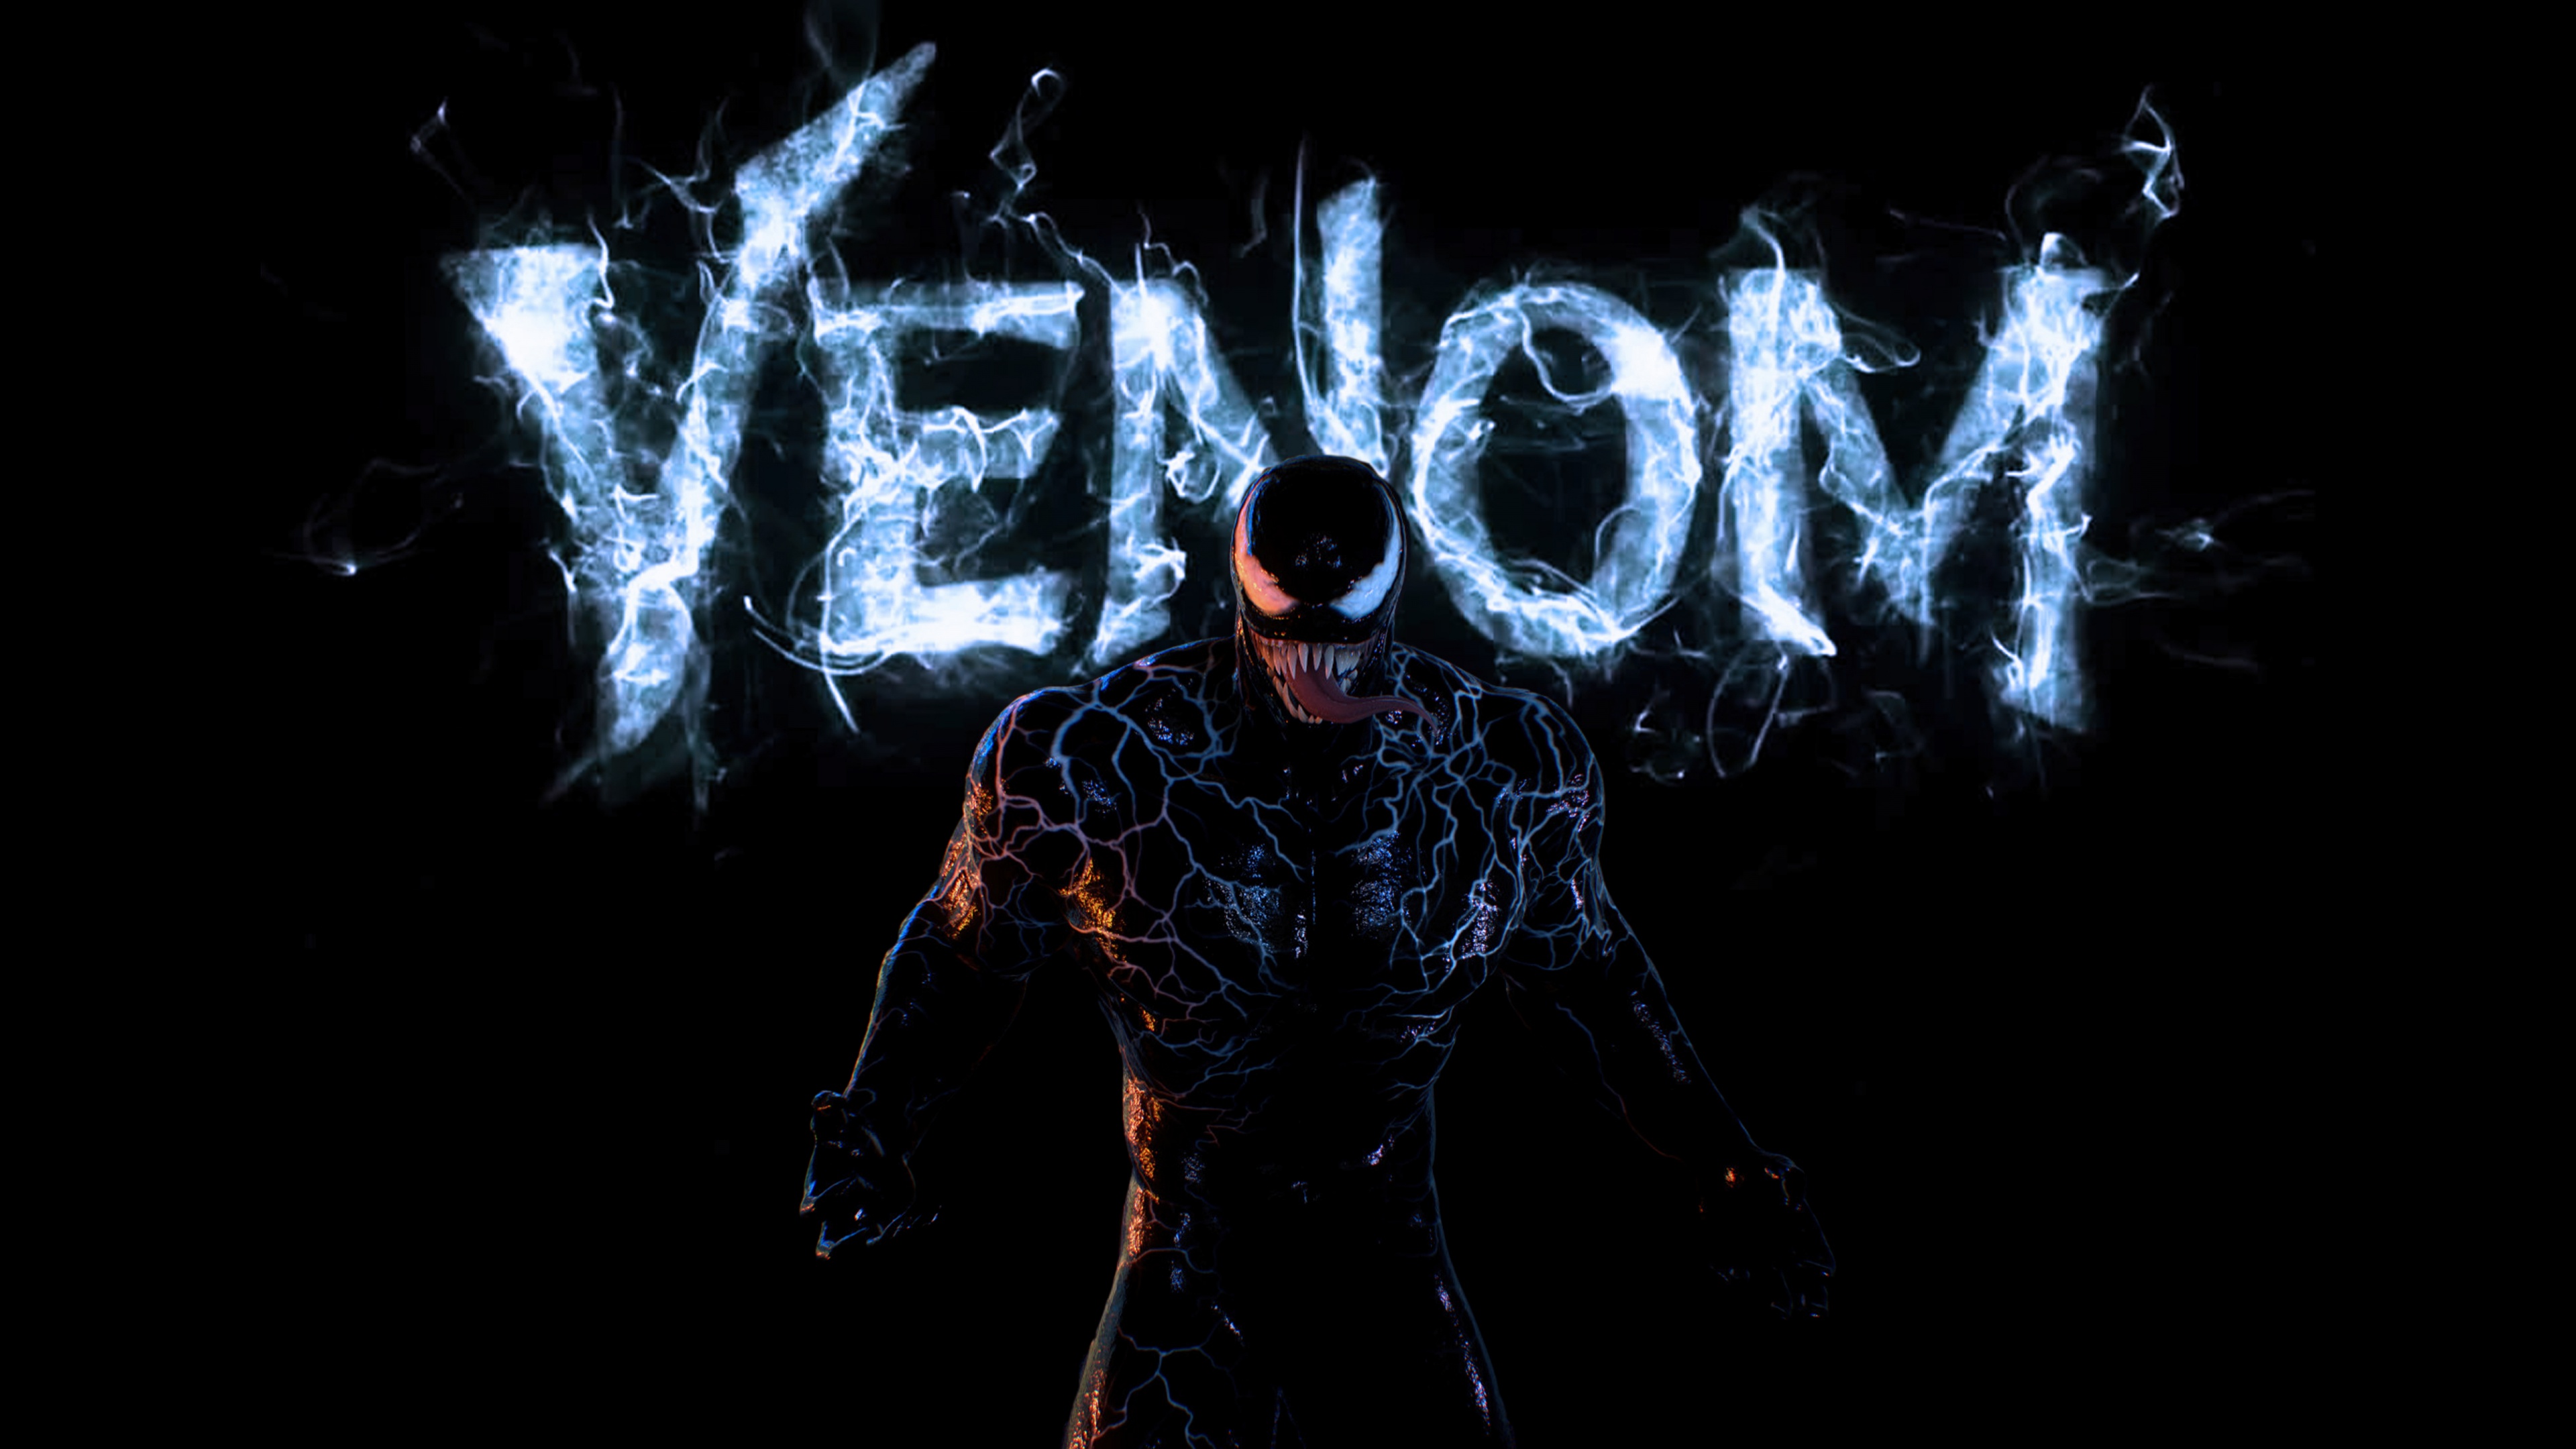 Bạn đang muốn tìm kiếm những hình nền Venom với chất lượng 4k đỉnh cao và đầy sắc nét? Vậy thì đừng bỏ lỡ bộ sưu tập hình nền Venom đẹp nhất trên mạng trên trang web của chúng tôi! Nhanh tay tải về và trang trí máy tính của bạn ngay thôi!